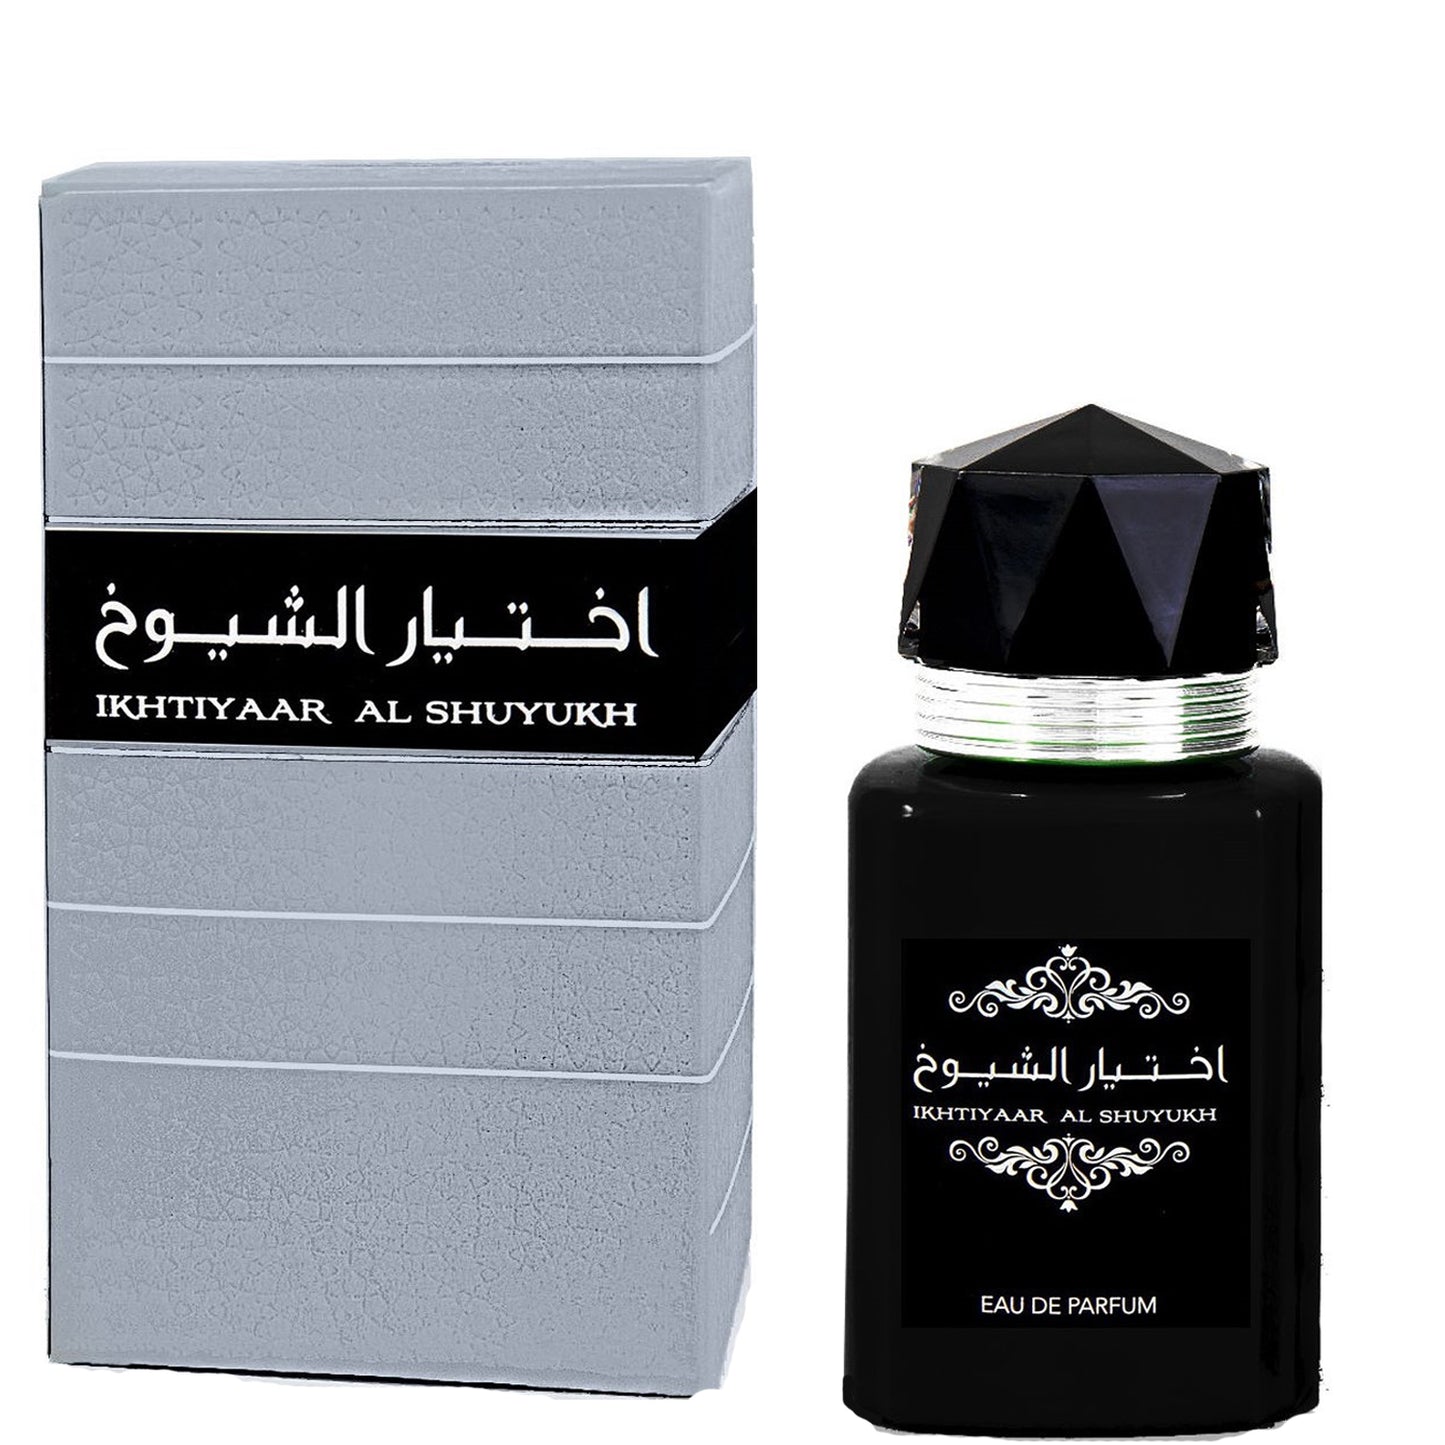 100 ml Woda Perfumowana Ikhtiyar Al Shuyukh Ostry, orientalno- piżmowy zapach dla mężczyzn